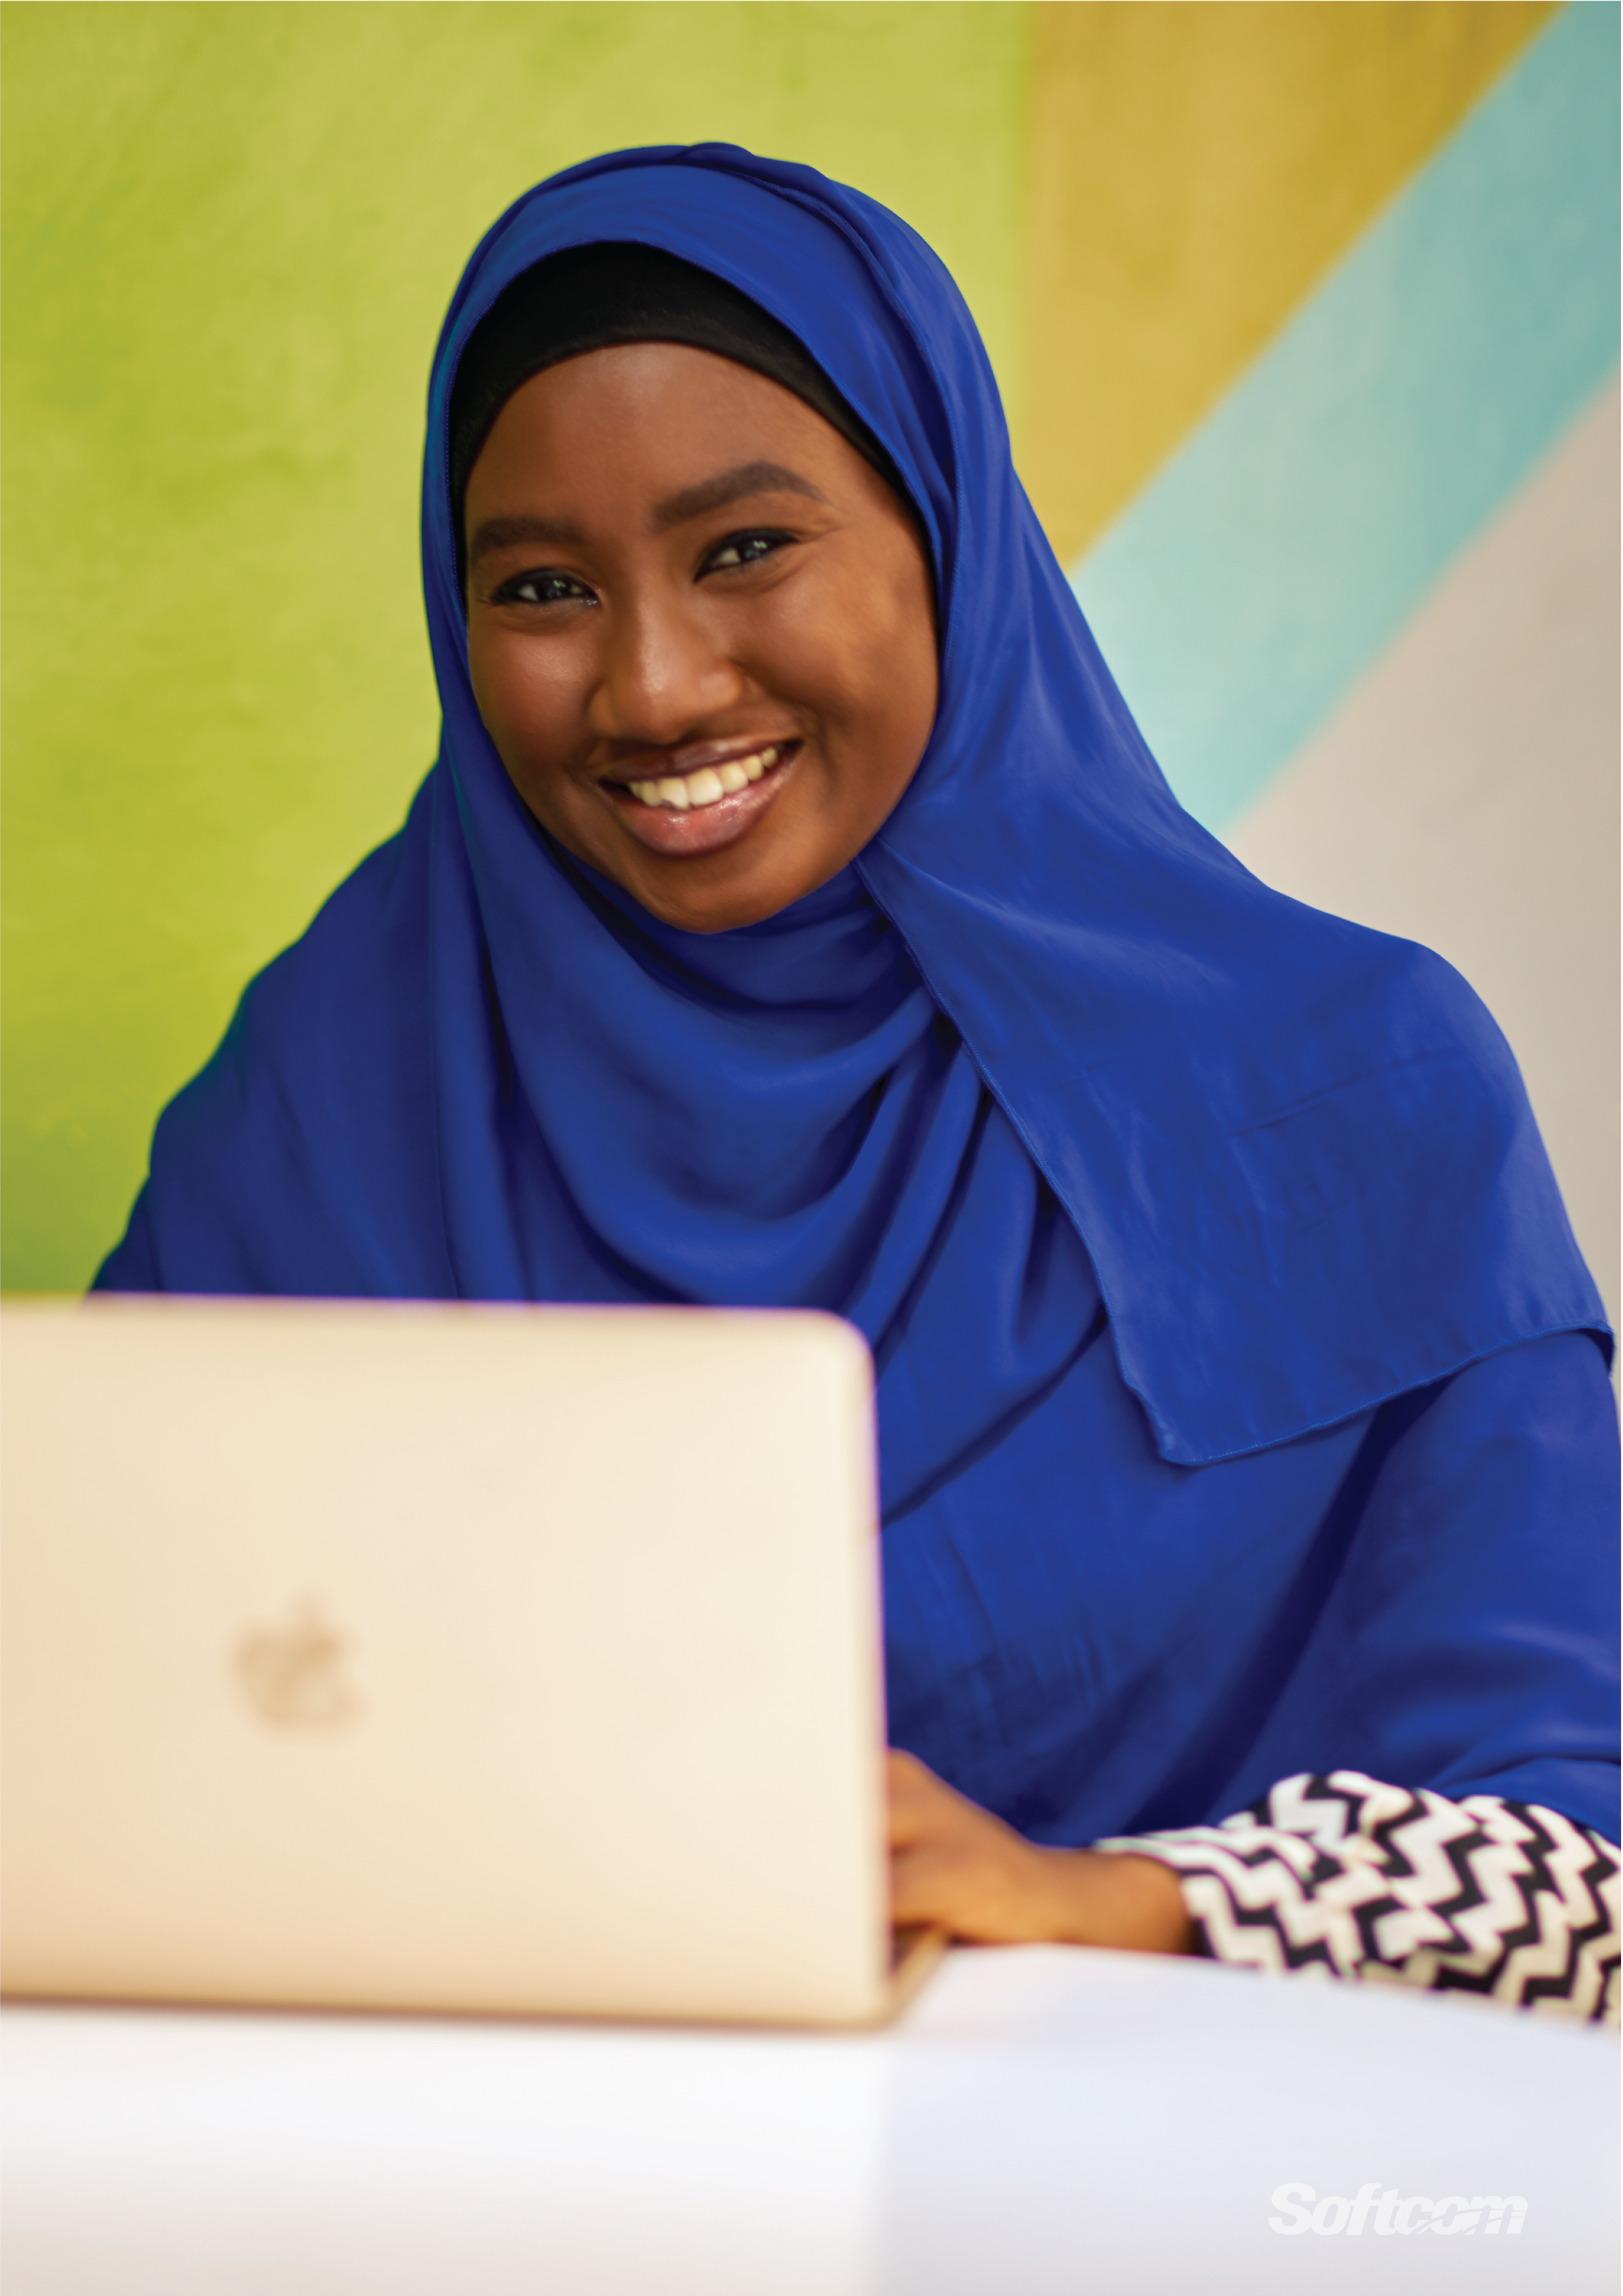 Nigerian Engineers in Hijabs